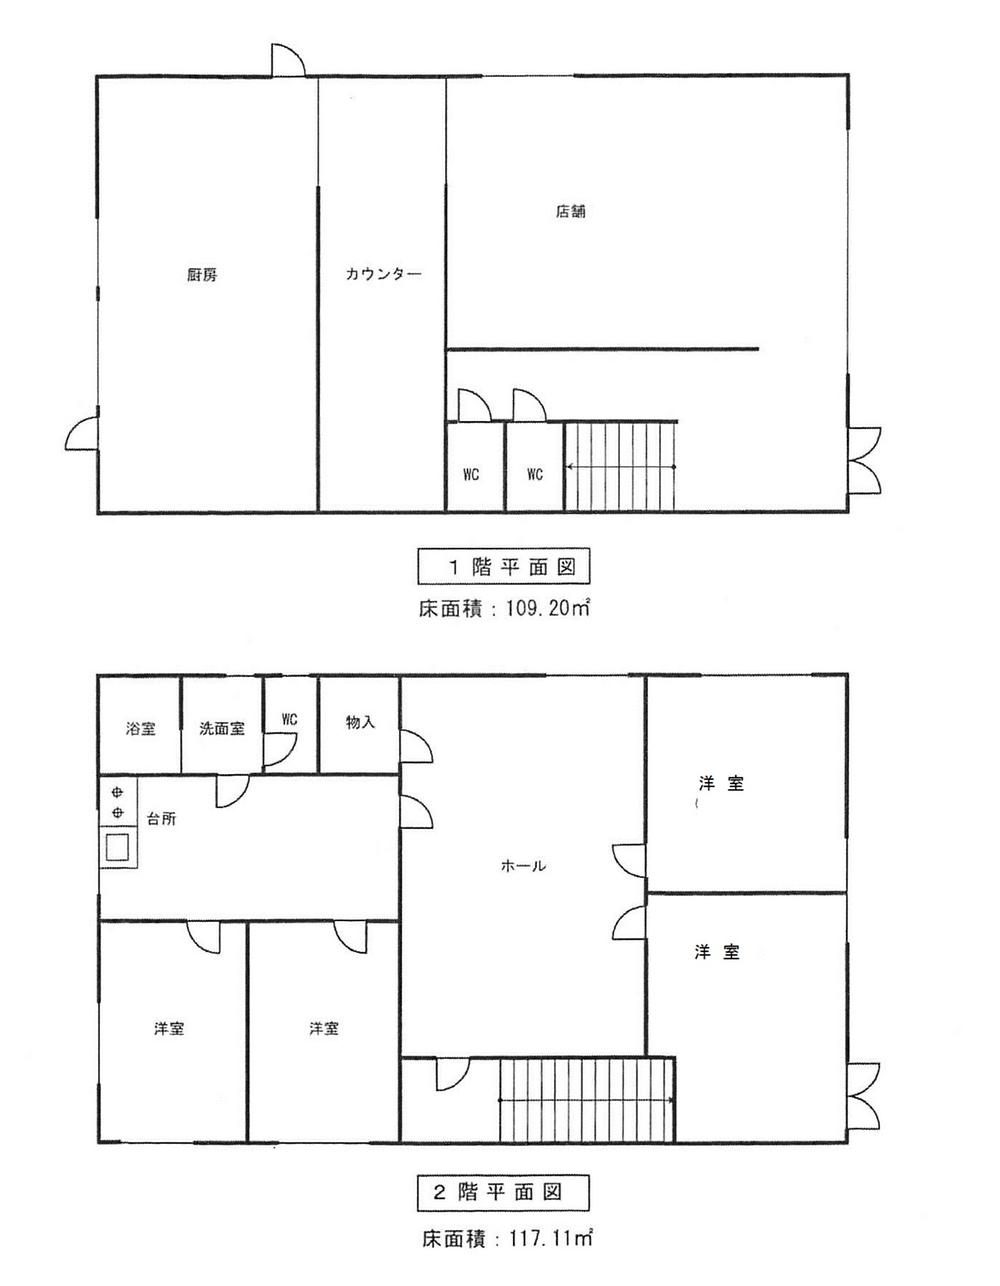 Floor plan. 14,980,000 yen, 5DK + S (storeroom), Land area 146.47 sq m , Building area 226.31 sq m Floor